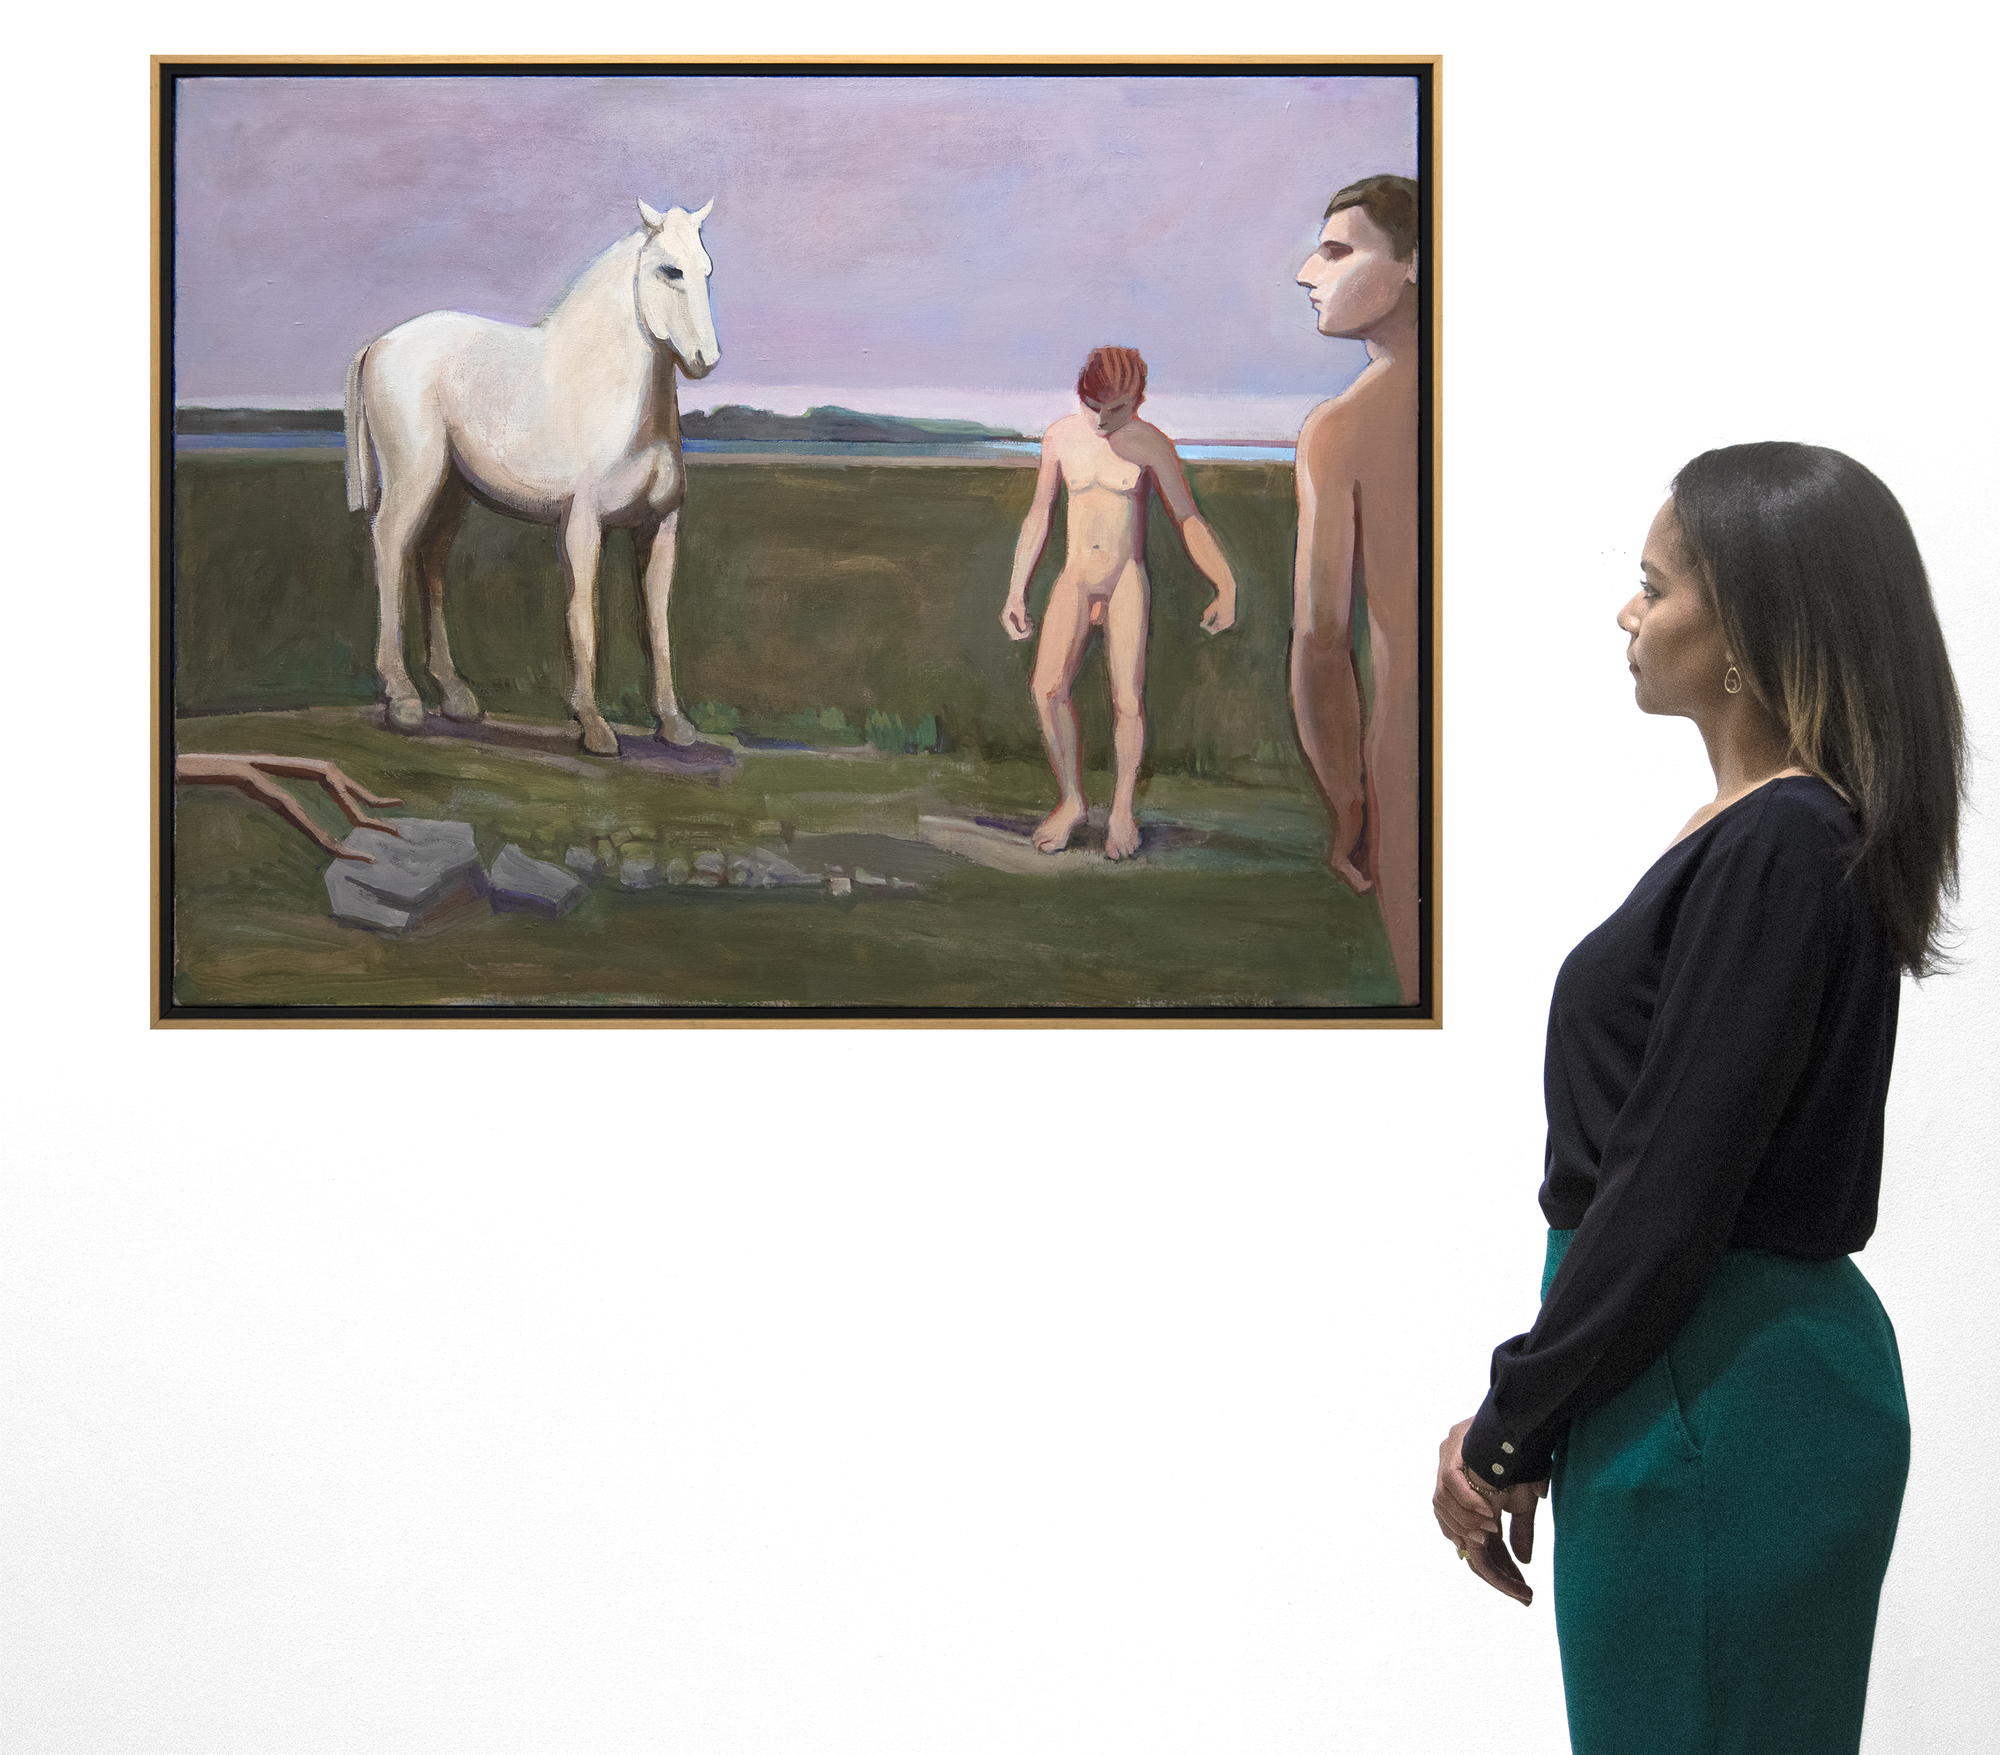 وليام ثيوفيلوس براون-الحصان مع السباحين في الشاطئ-الأكريليك علي قماش-36 x 48 في.